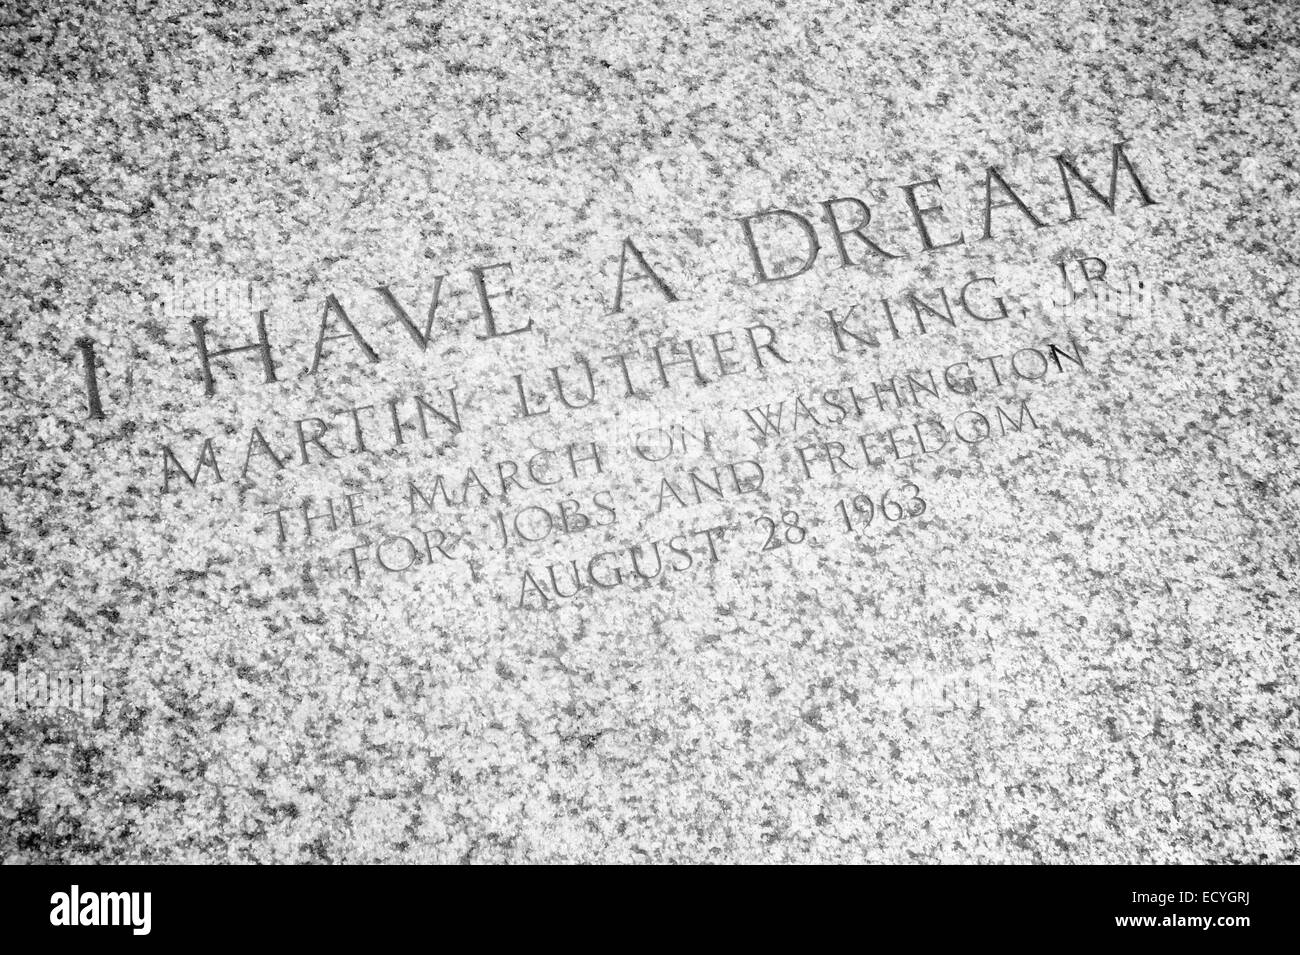 WASHINGTON DC, USA - 30 juillet 2014 : 'J'ai un rêve' Citation de Martin Luther King gravés sur les marches du Lincoln Memorial. Banque D'Images